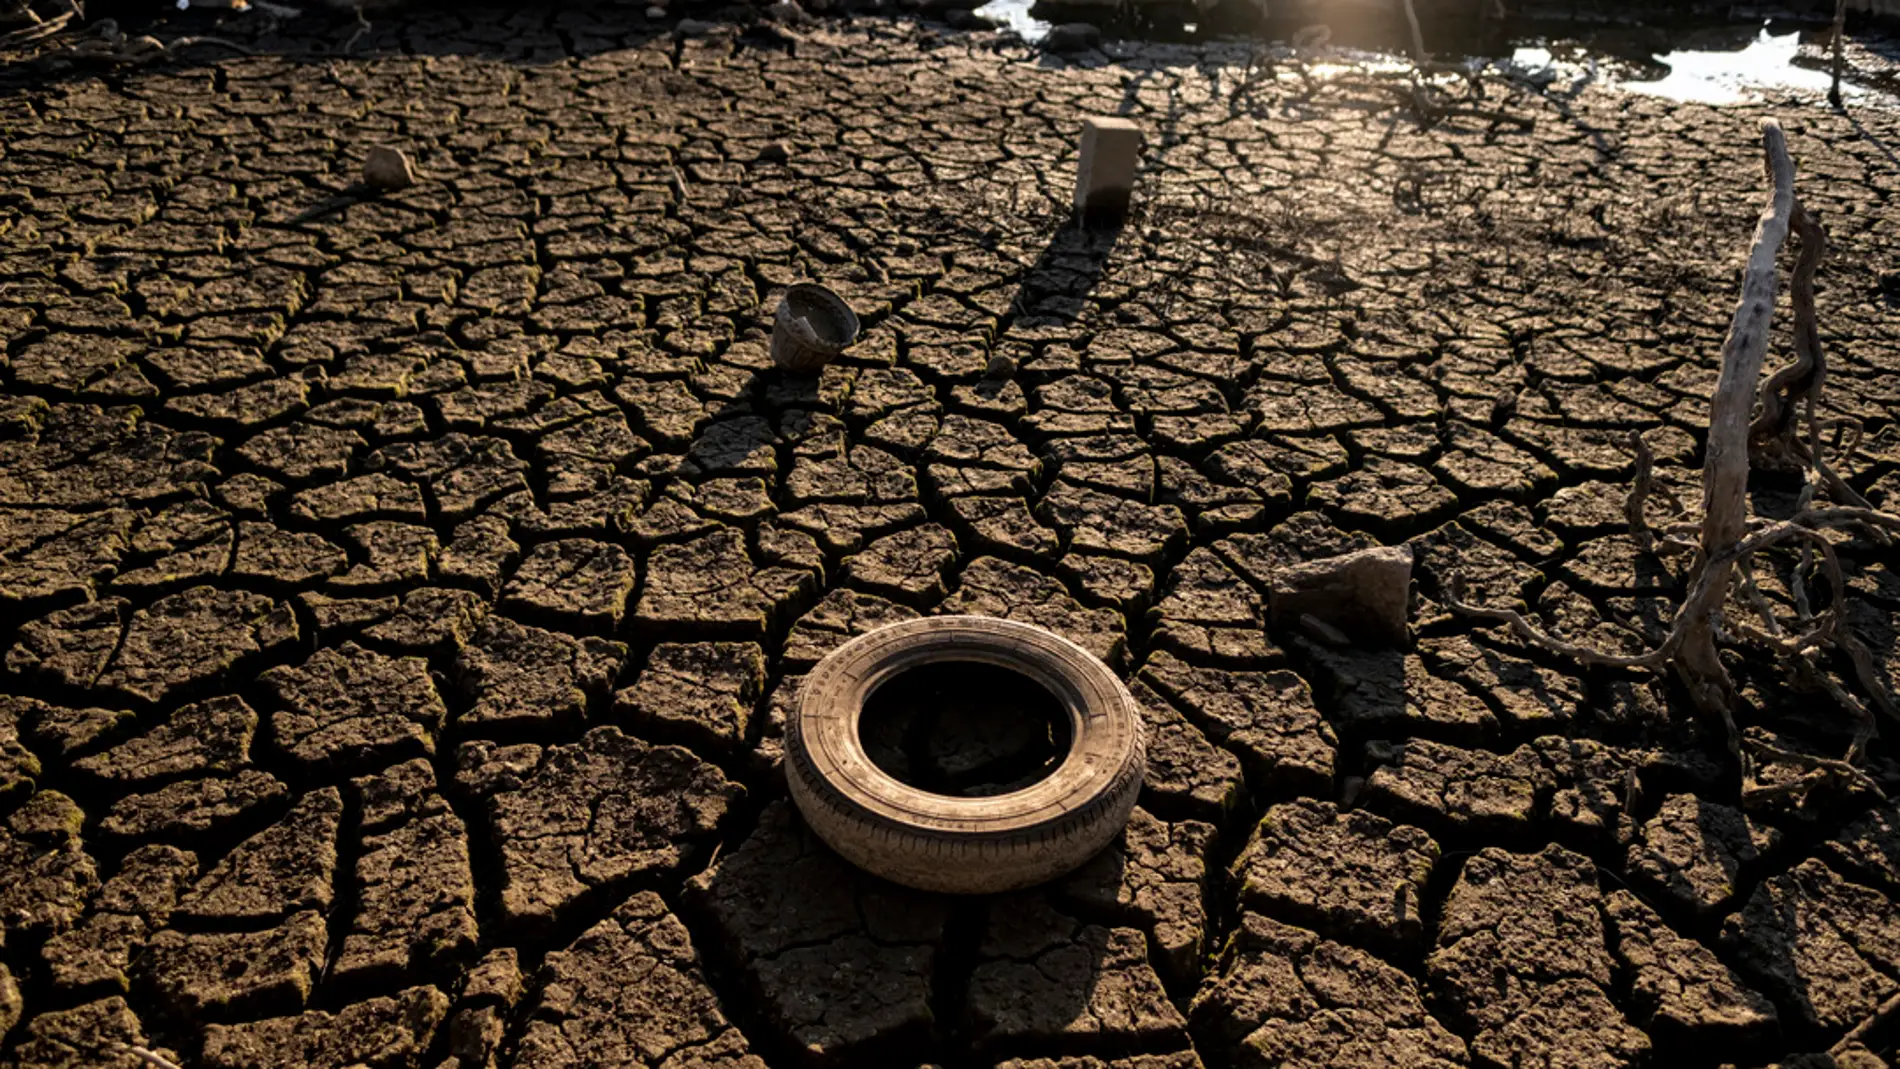 La sequía destrozará la economía mundial a largo plazo: pérdida de cosechas y repunte de enfermedades